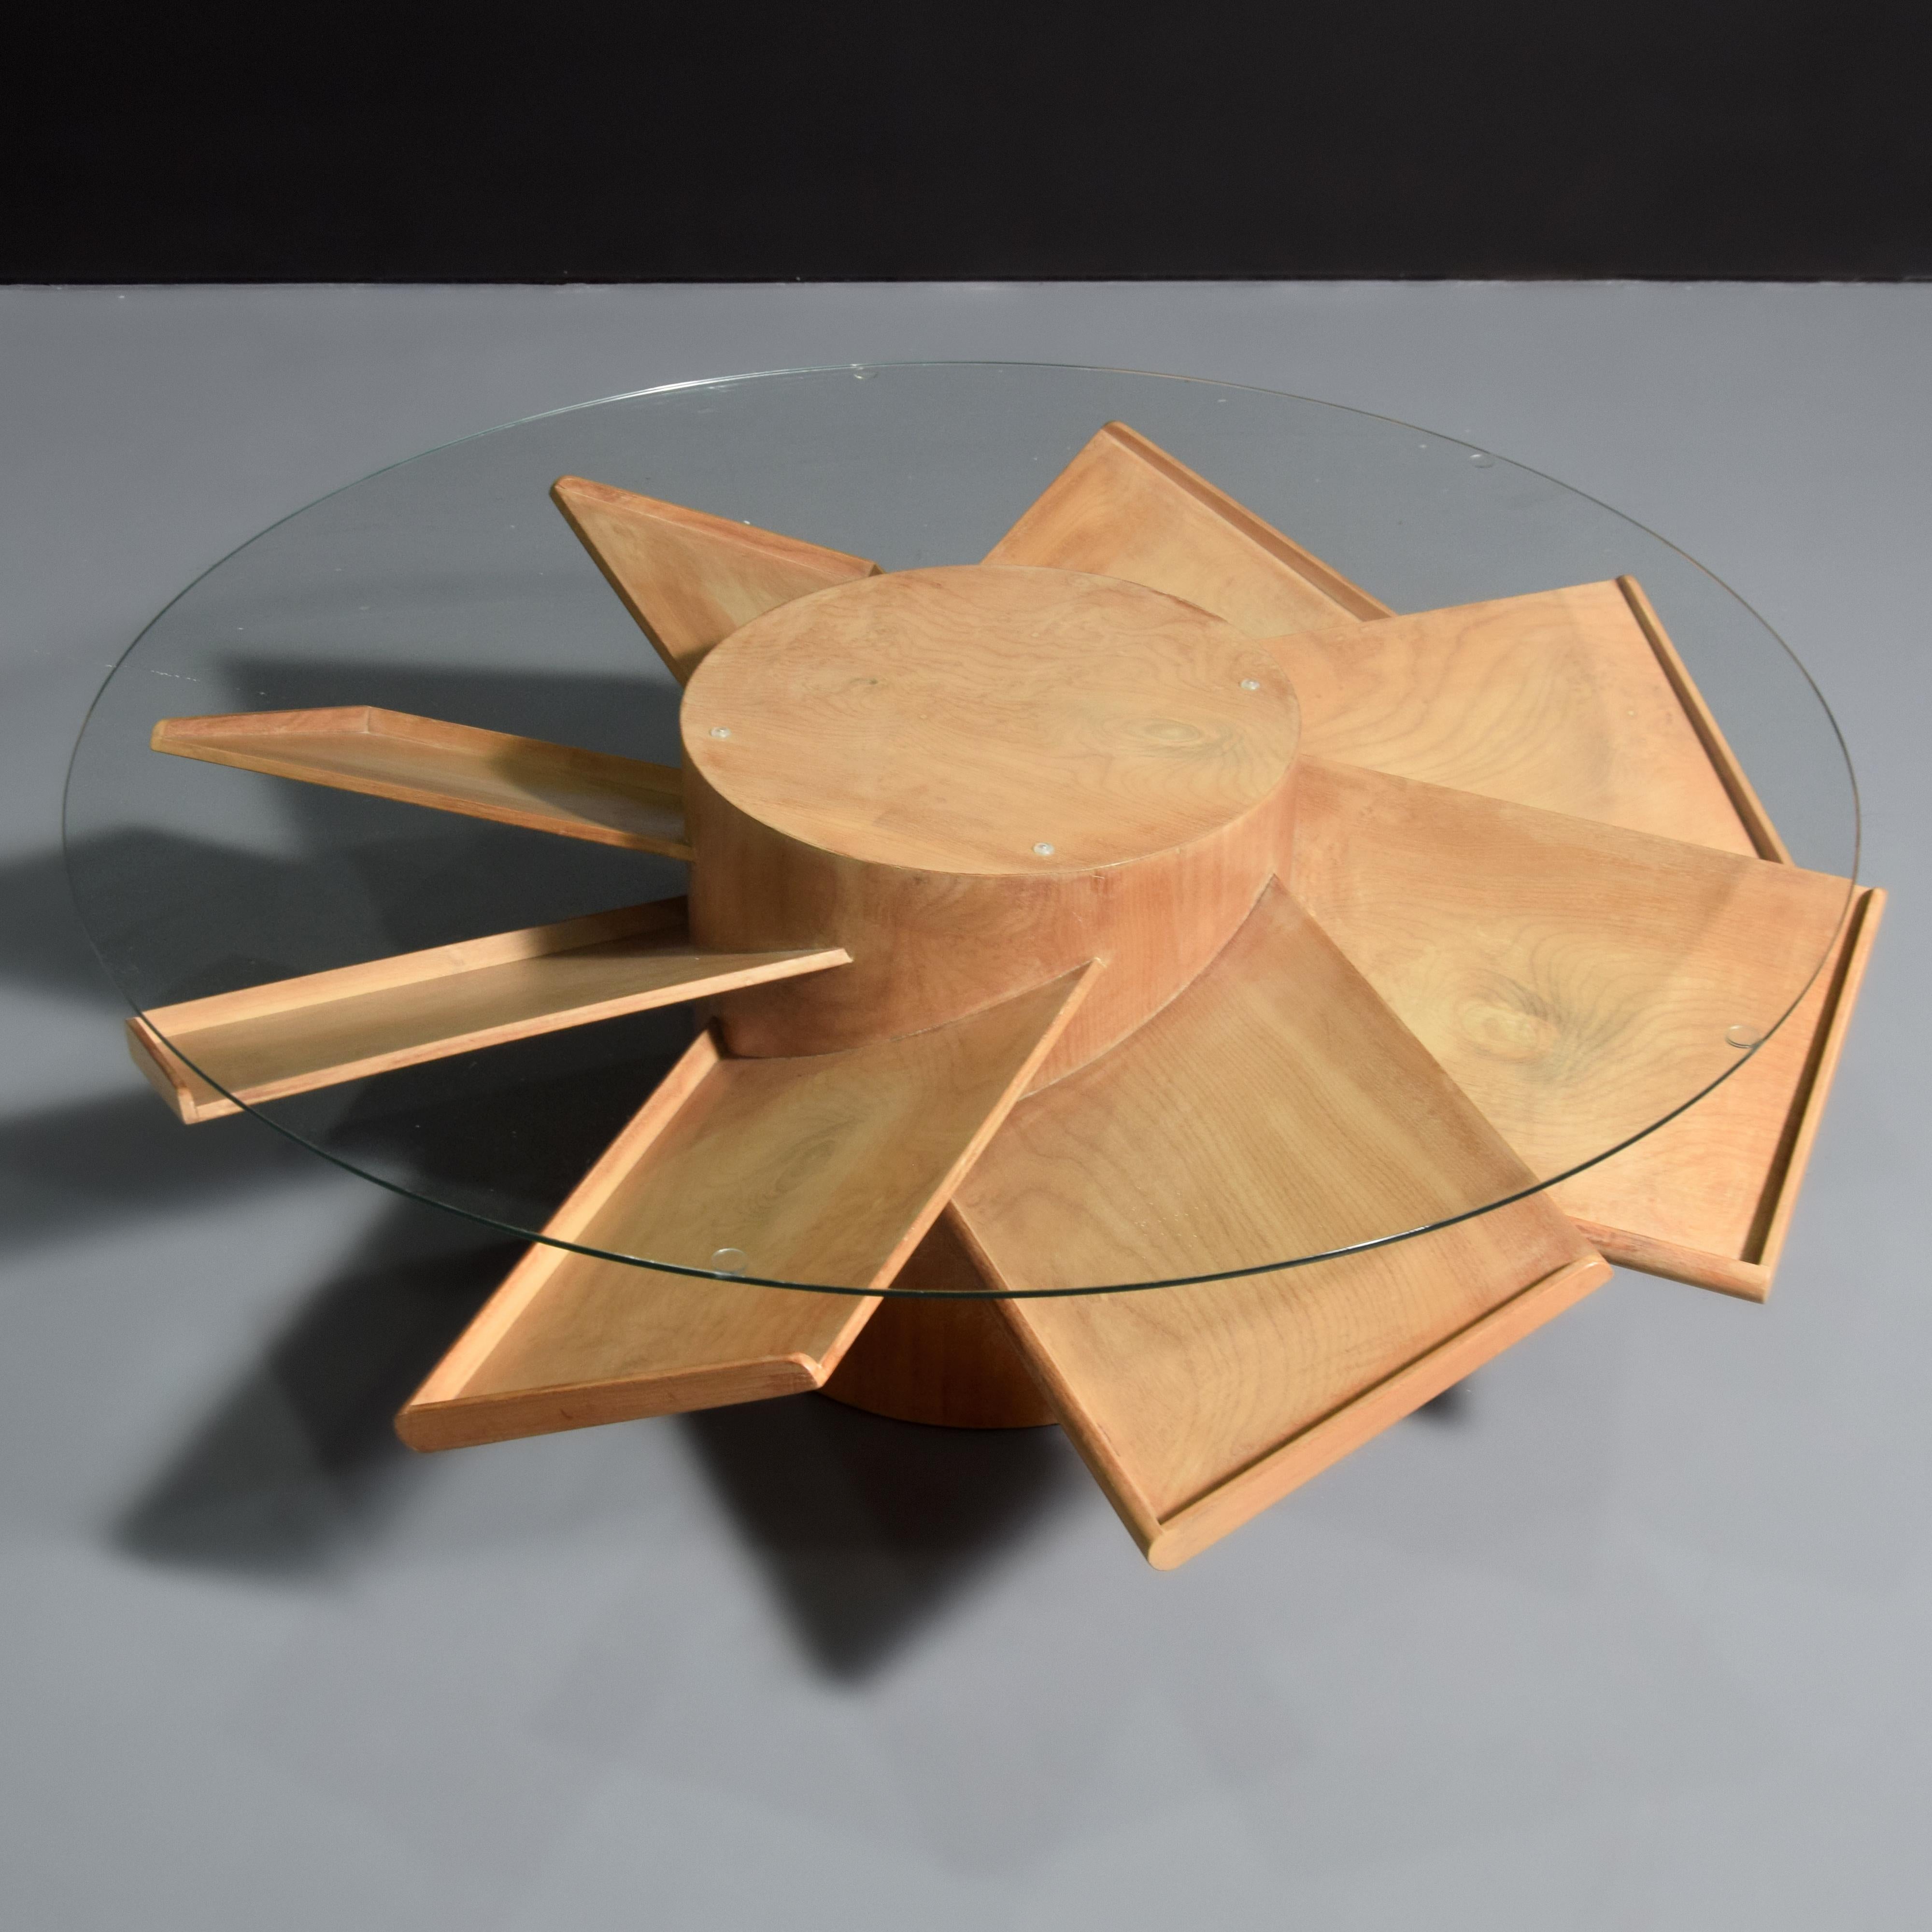 Artistics/Designer : Samuel Marx (américain, 1885-1964) ; Quigley

Informations complémentaires : Table basse rotative avec huit étagères en forme d'hélice. Provenance : Provenance : Résidence Plotkin-Dresner, Highland Park, Illinois. Référence :